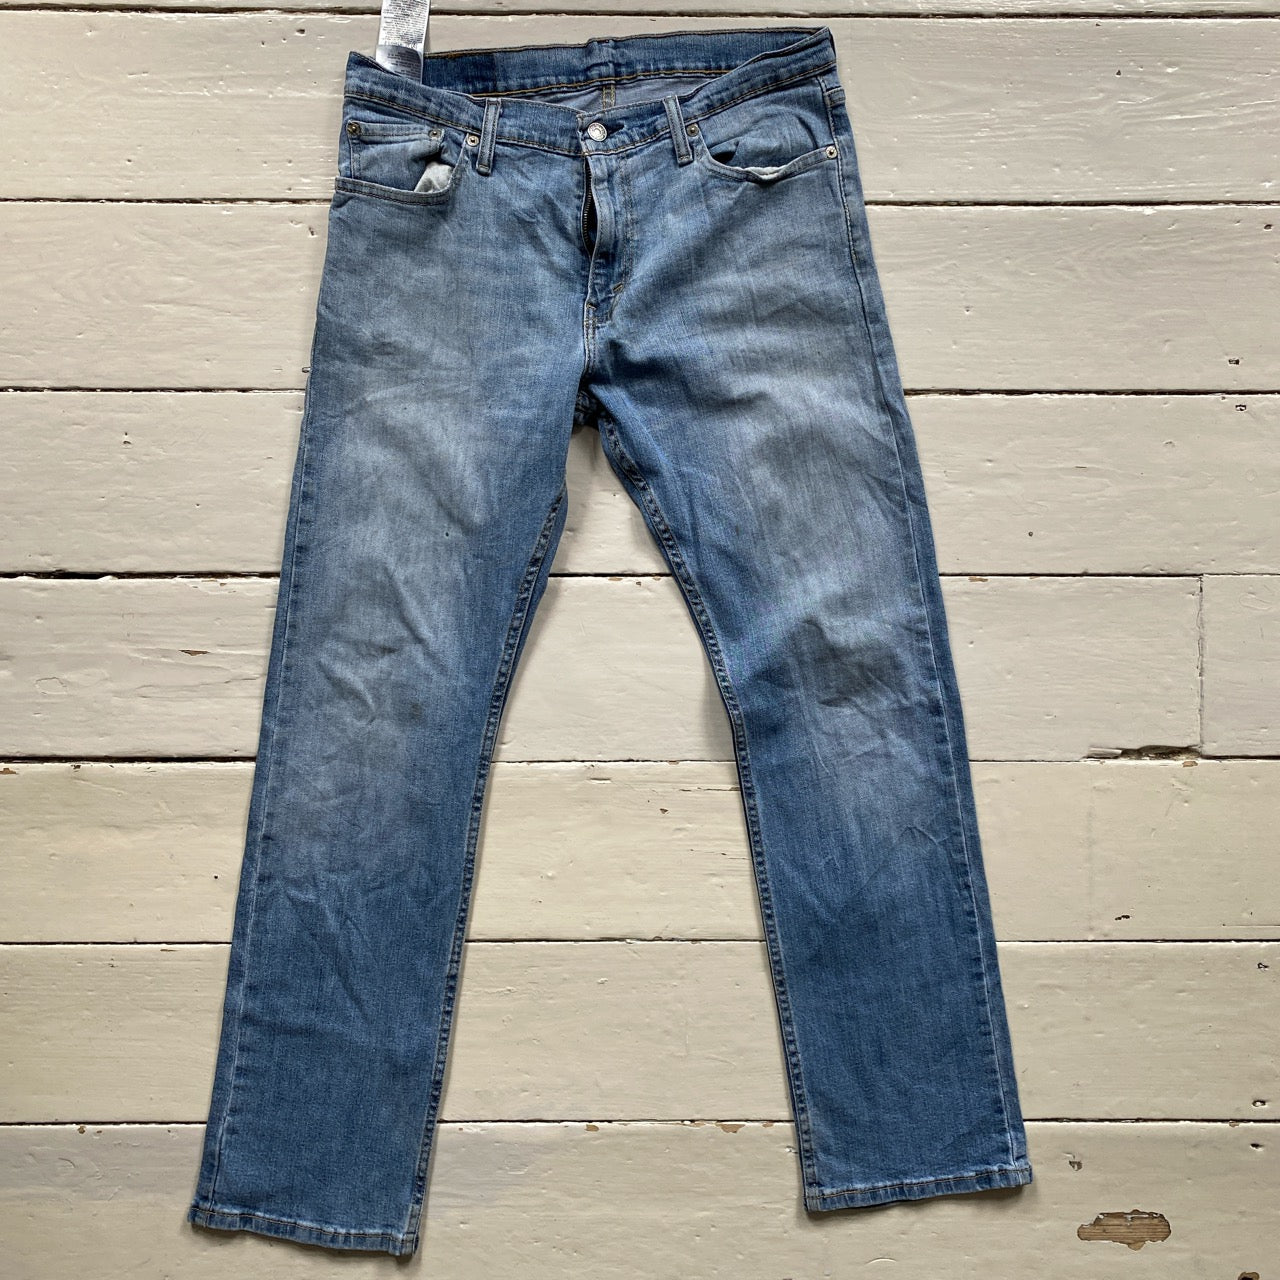 Levis 511 Light Slim Fit Jeans (34/30)